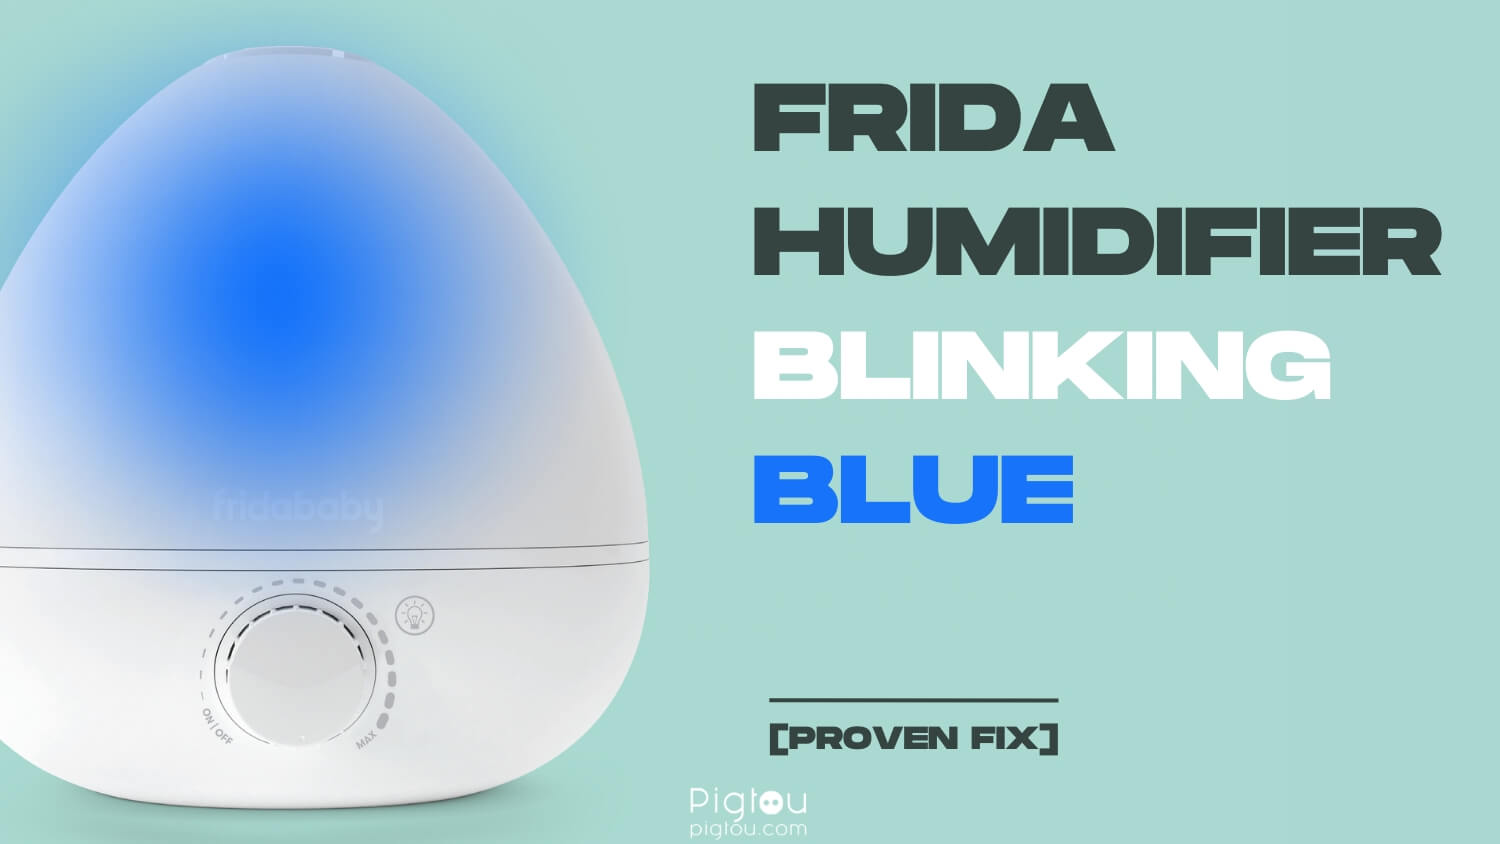 Frida Humidifier Blinking Blue [PROVEN FIX!]